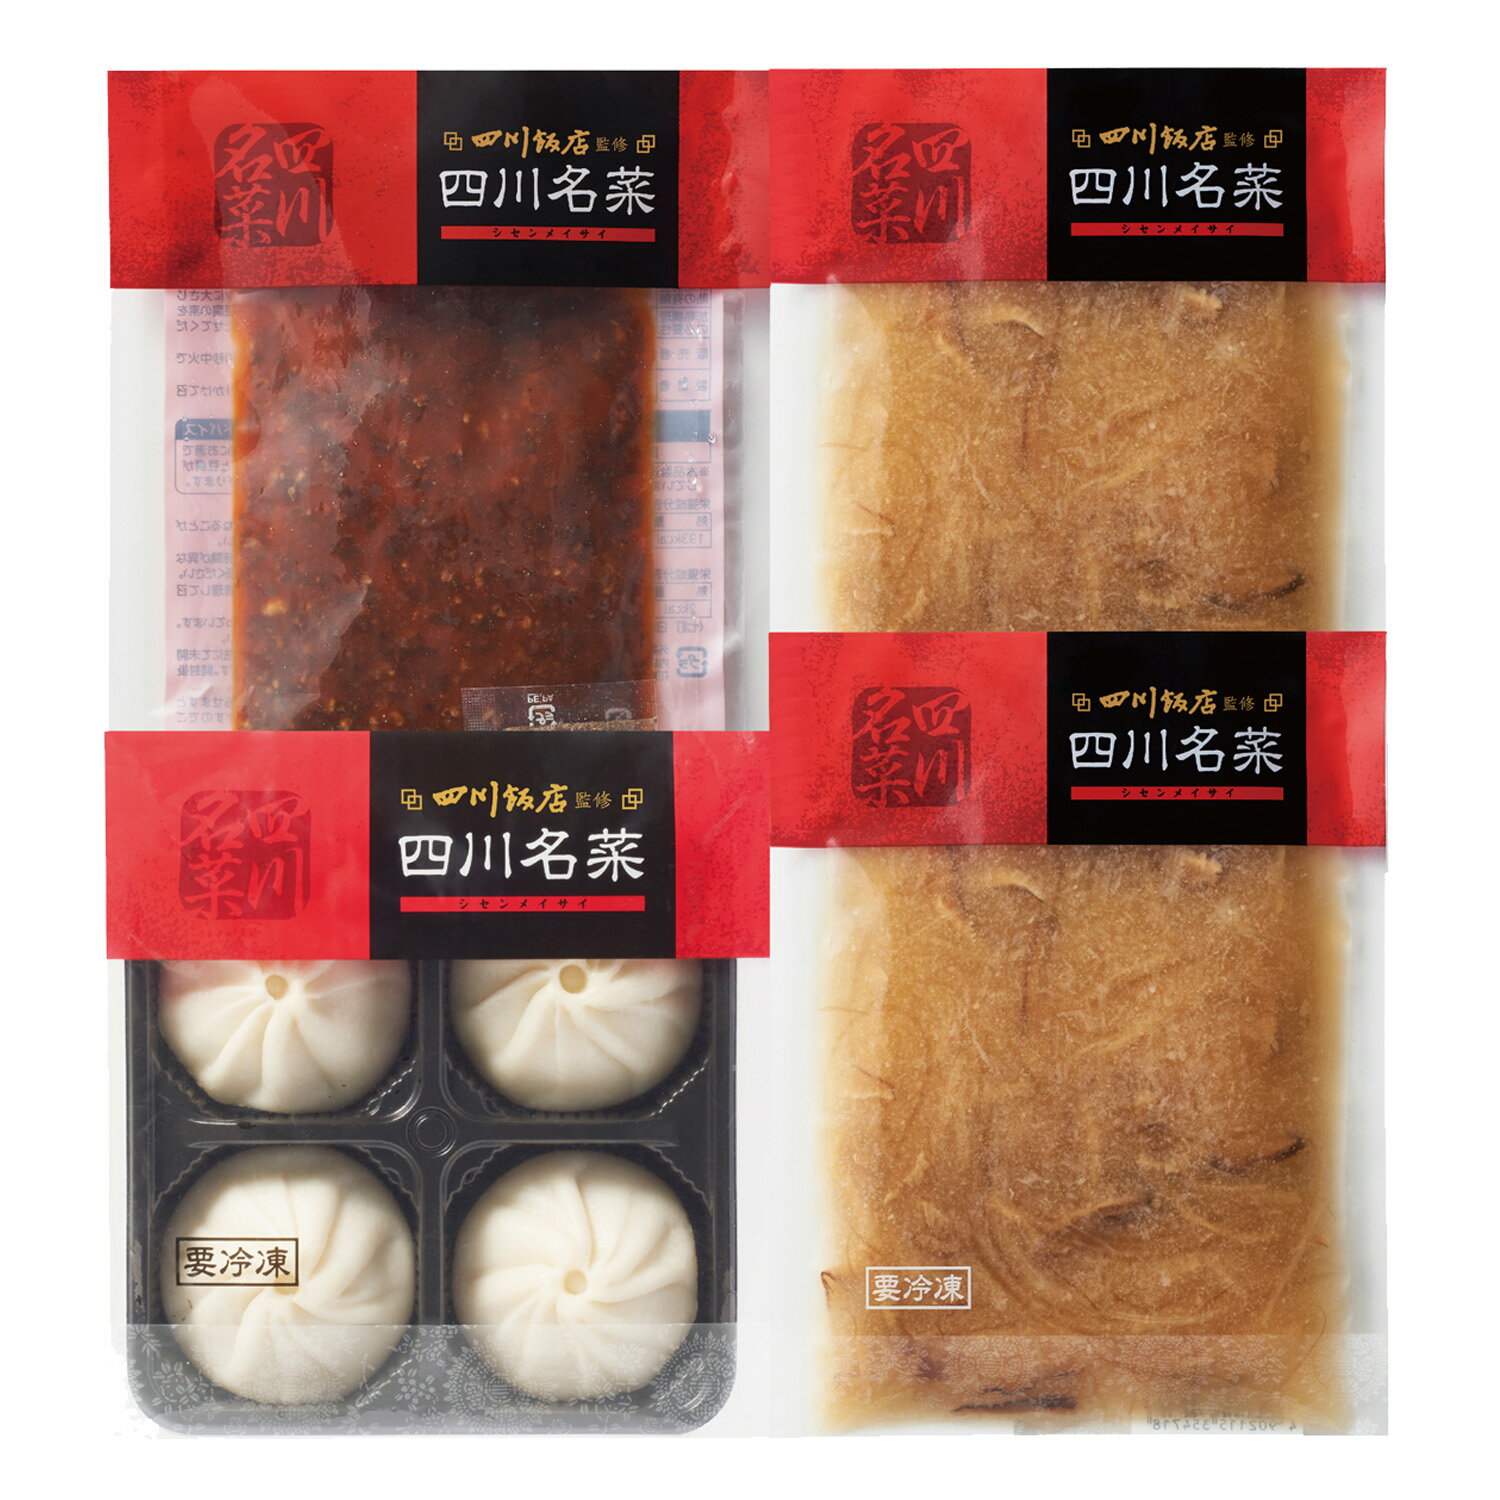 商品情報内容量陳麻婆豆腐の素(山椒付)110gふかひれ入りスープ150g×2小籠包（4個）120g賞味期限製造日含め545日保存方法-18度以下で保存してください。販売者日本ハム株式会社大阪市北区梅田2－4－9備考クール(冷凍)便のお届けとなります。 原材料情報やパッケージは変更の場合がございます。お召し上がりの前に、お手元の商品のラベルなどご確認いただきますようお願い申し上げます。日本ハム 四川飯店監修 四川名菜 麻婆豆腐セット SSN-30T 中華ギフト 冷凍 送料無料 四川飯店王道の陳麻婆豆腐を中心に本格四川料理をご家庭で手軽にお楽しみいただけます。 5